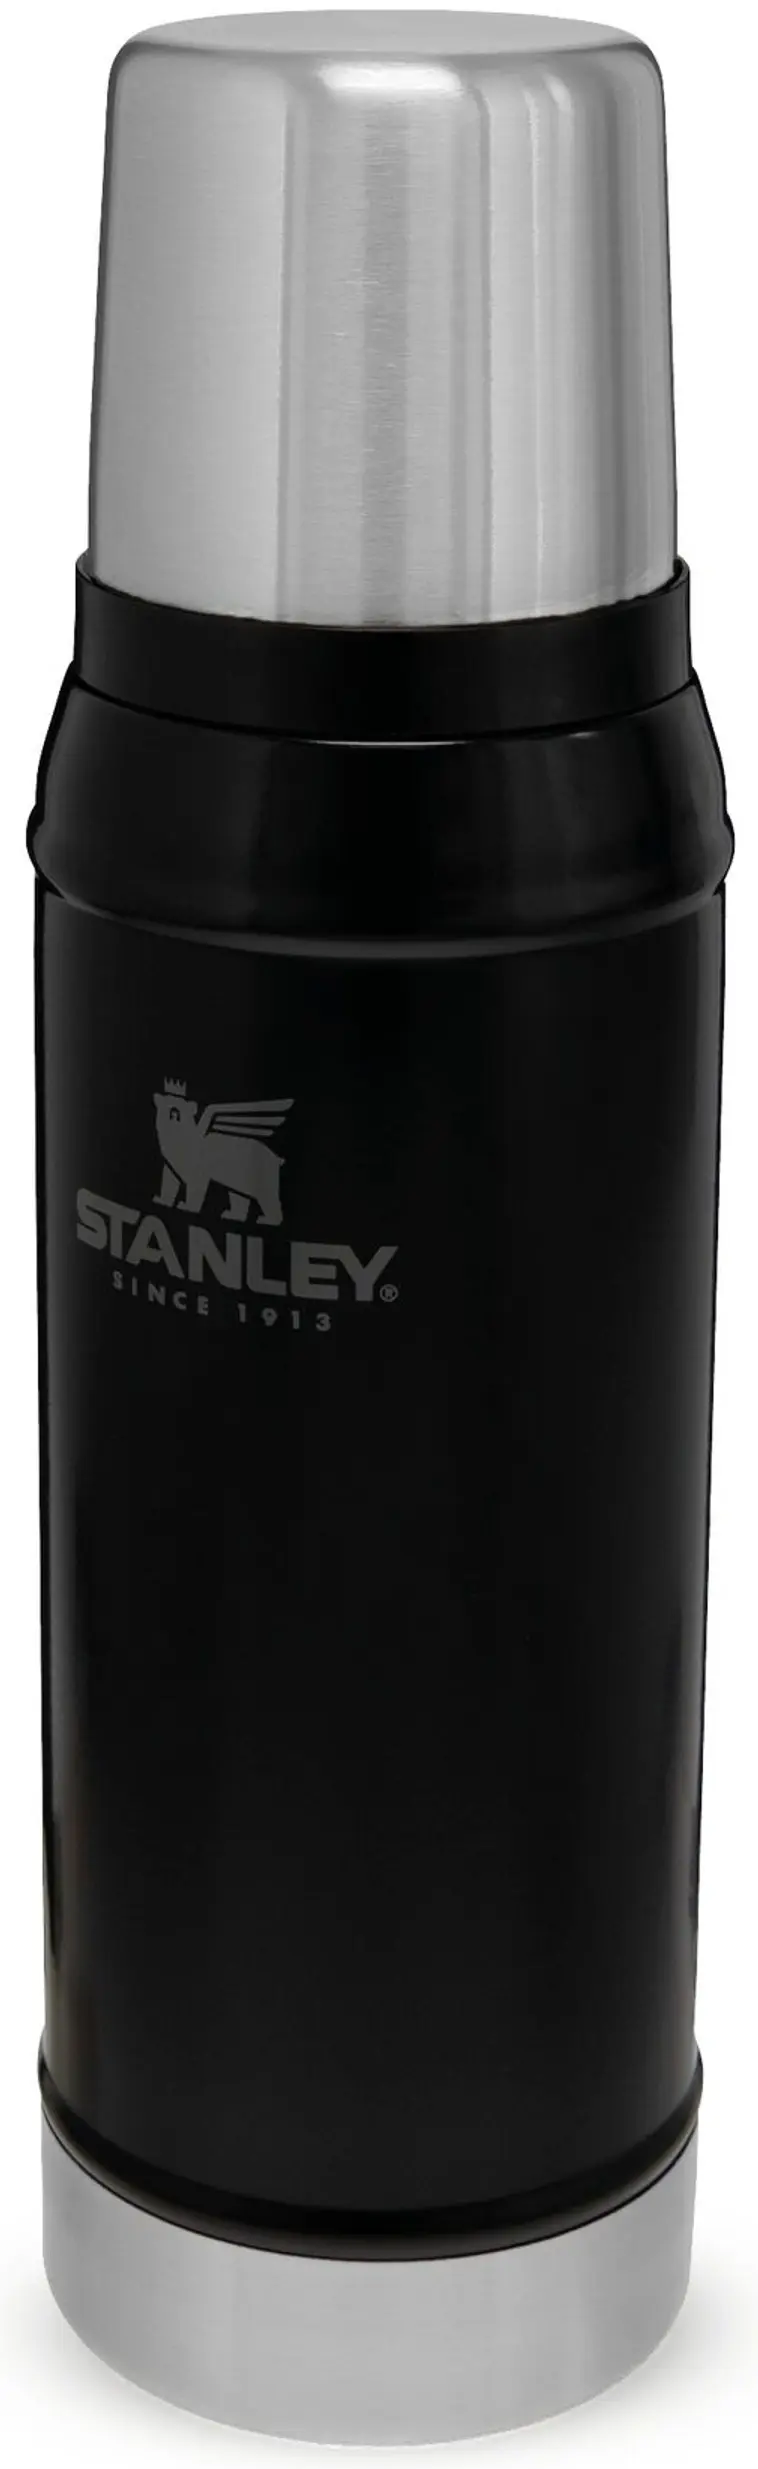 Stanley termospullo classic musta 0,7l - 1